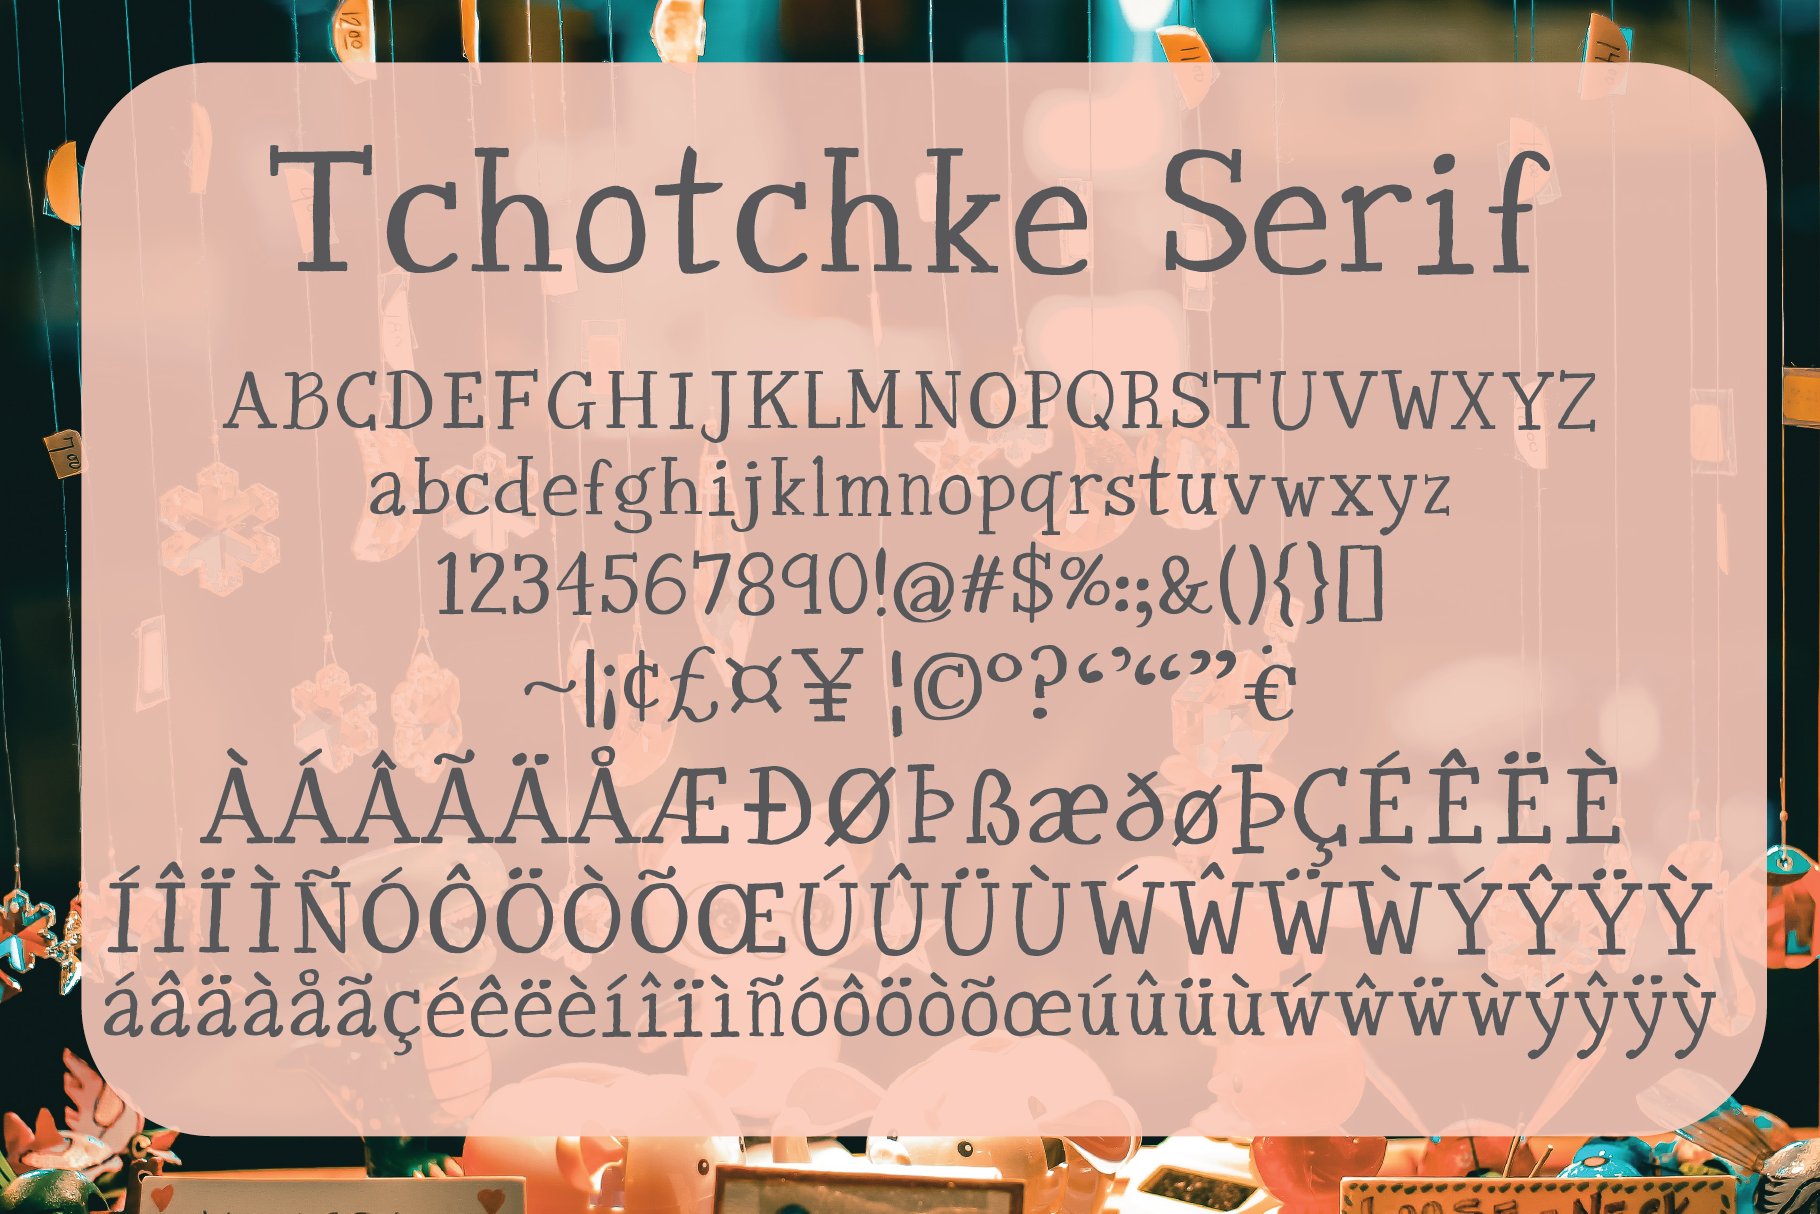 tchotchke serif character list 01 444